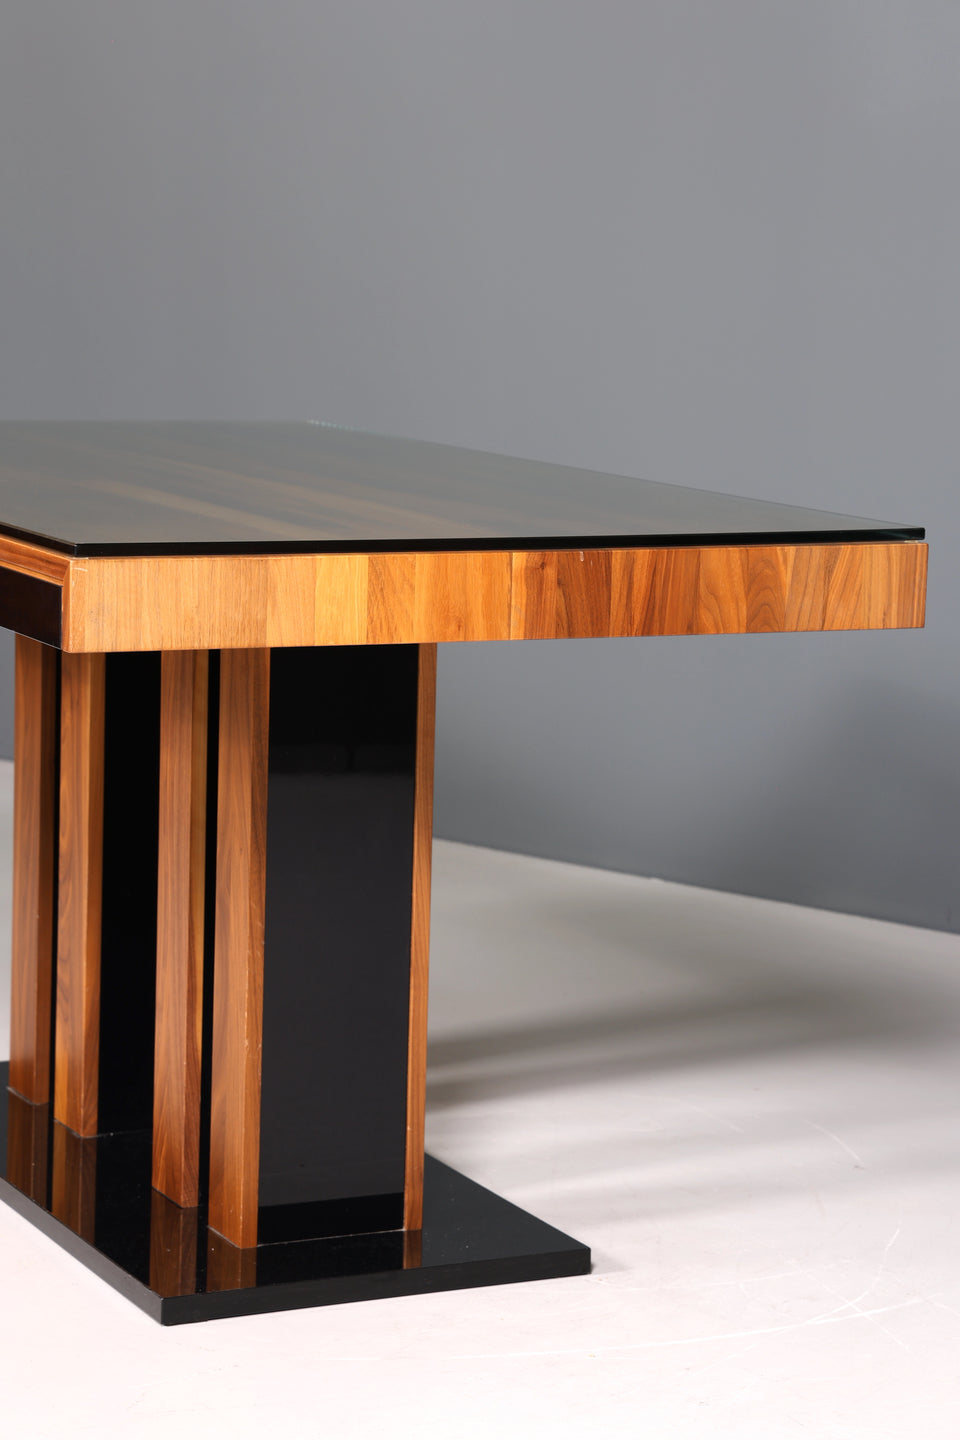 Wunderschöner Esstisch im Art Deco Design Nussbaum Tisch design Küchentisch